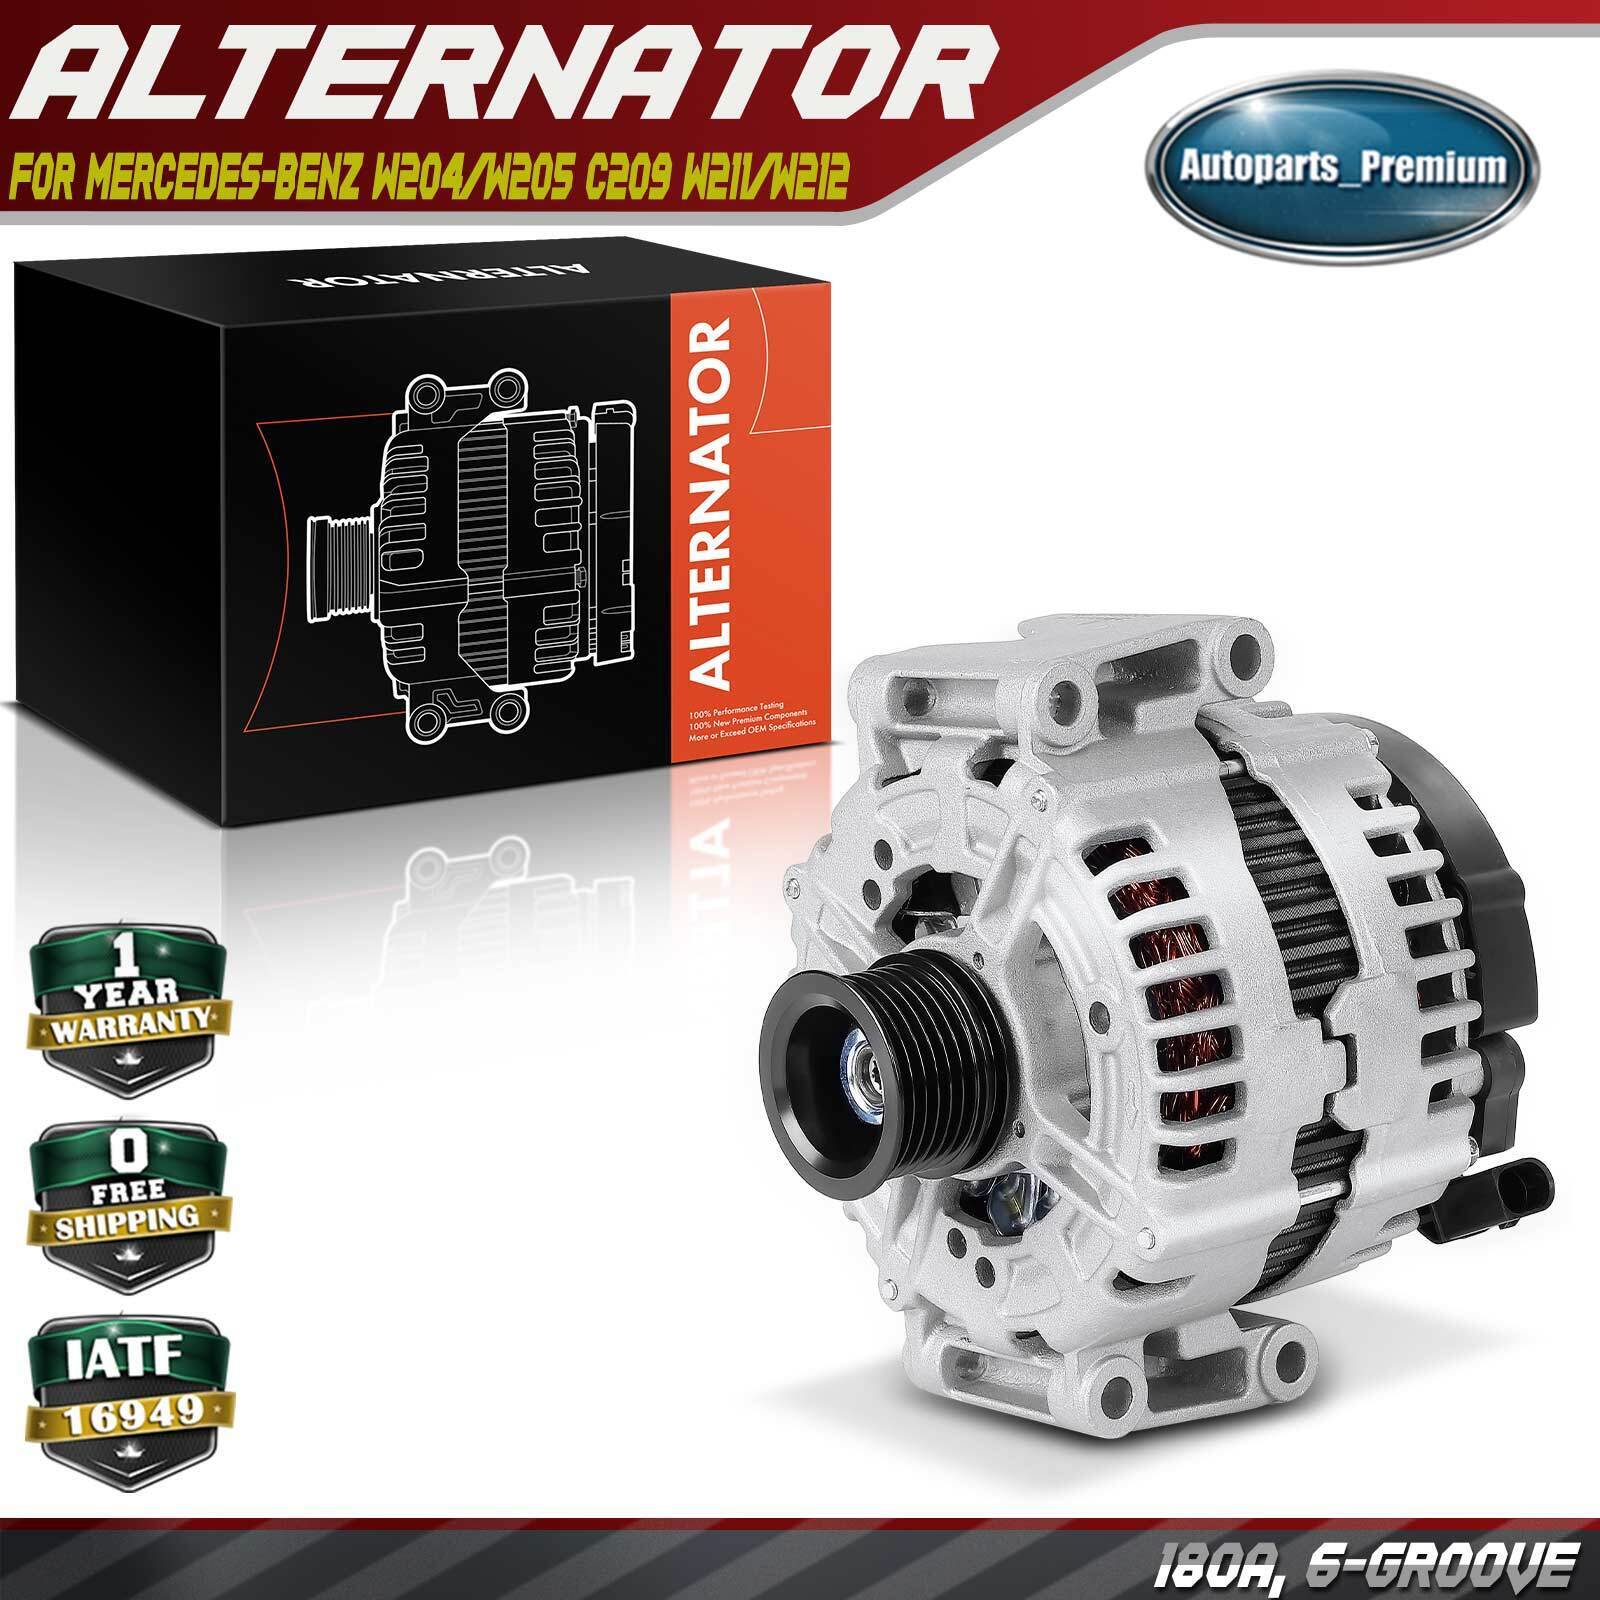 Alternator for Mercedes-Benz W204/W205 C209 W211/W212 C63 AMG CLK63 AMG E63 AMG